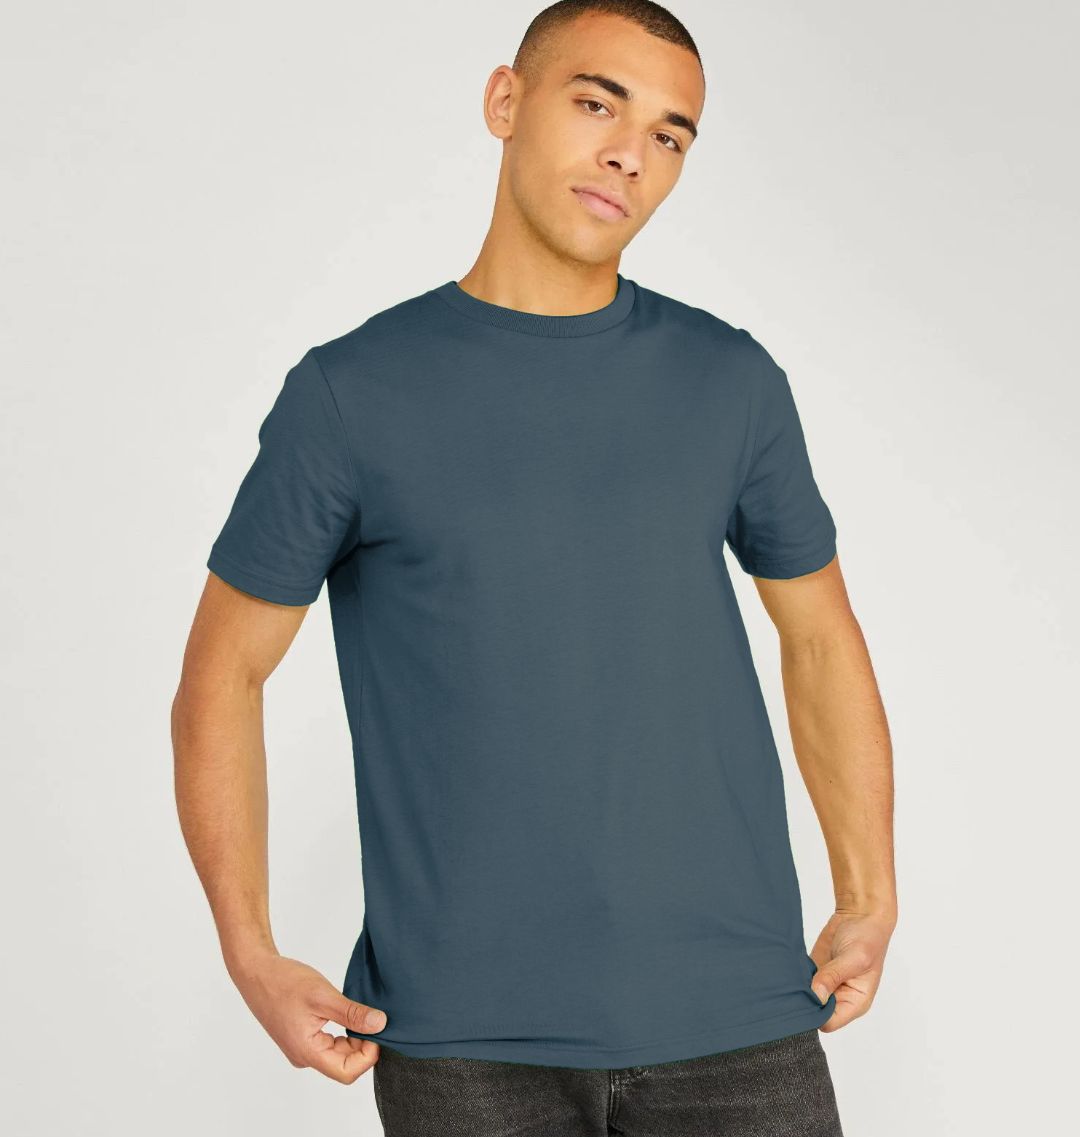 plain dark blue t shirt